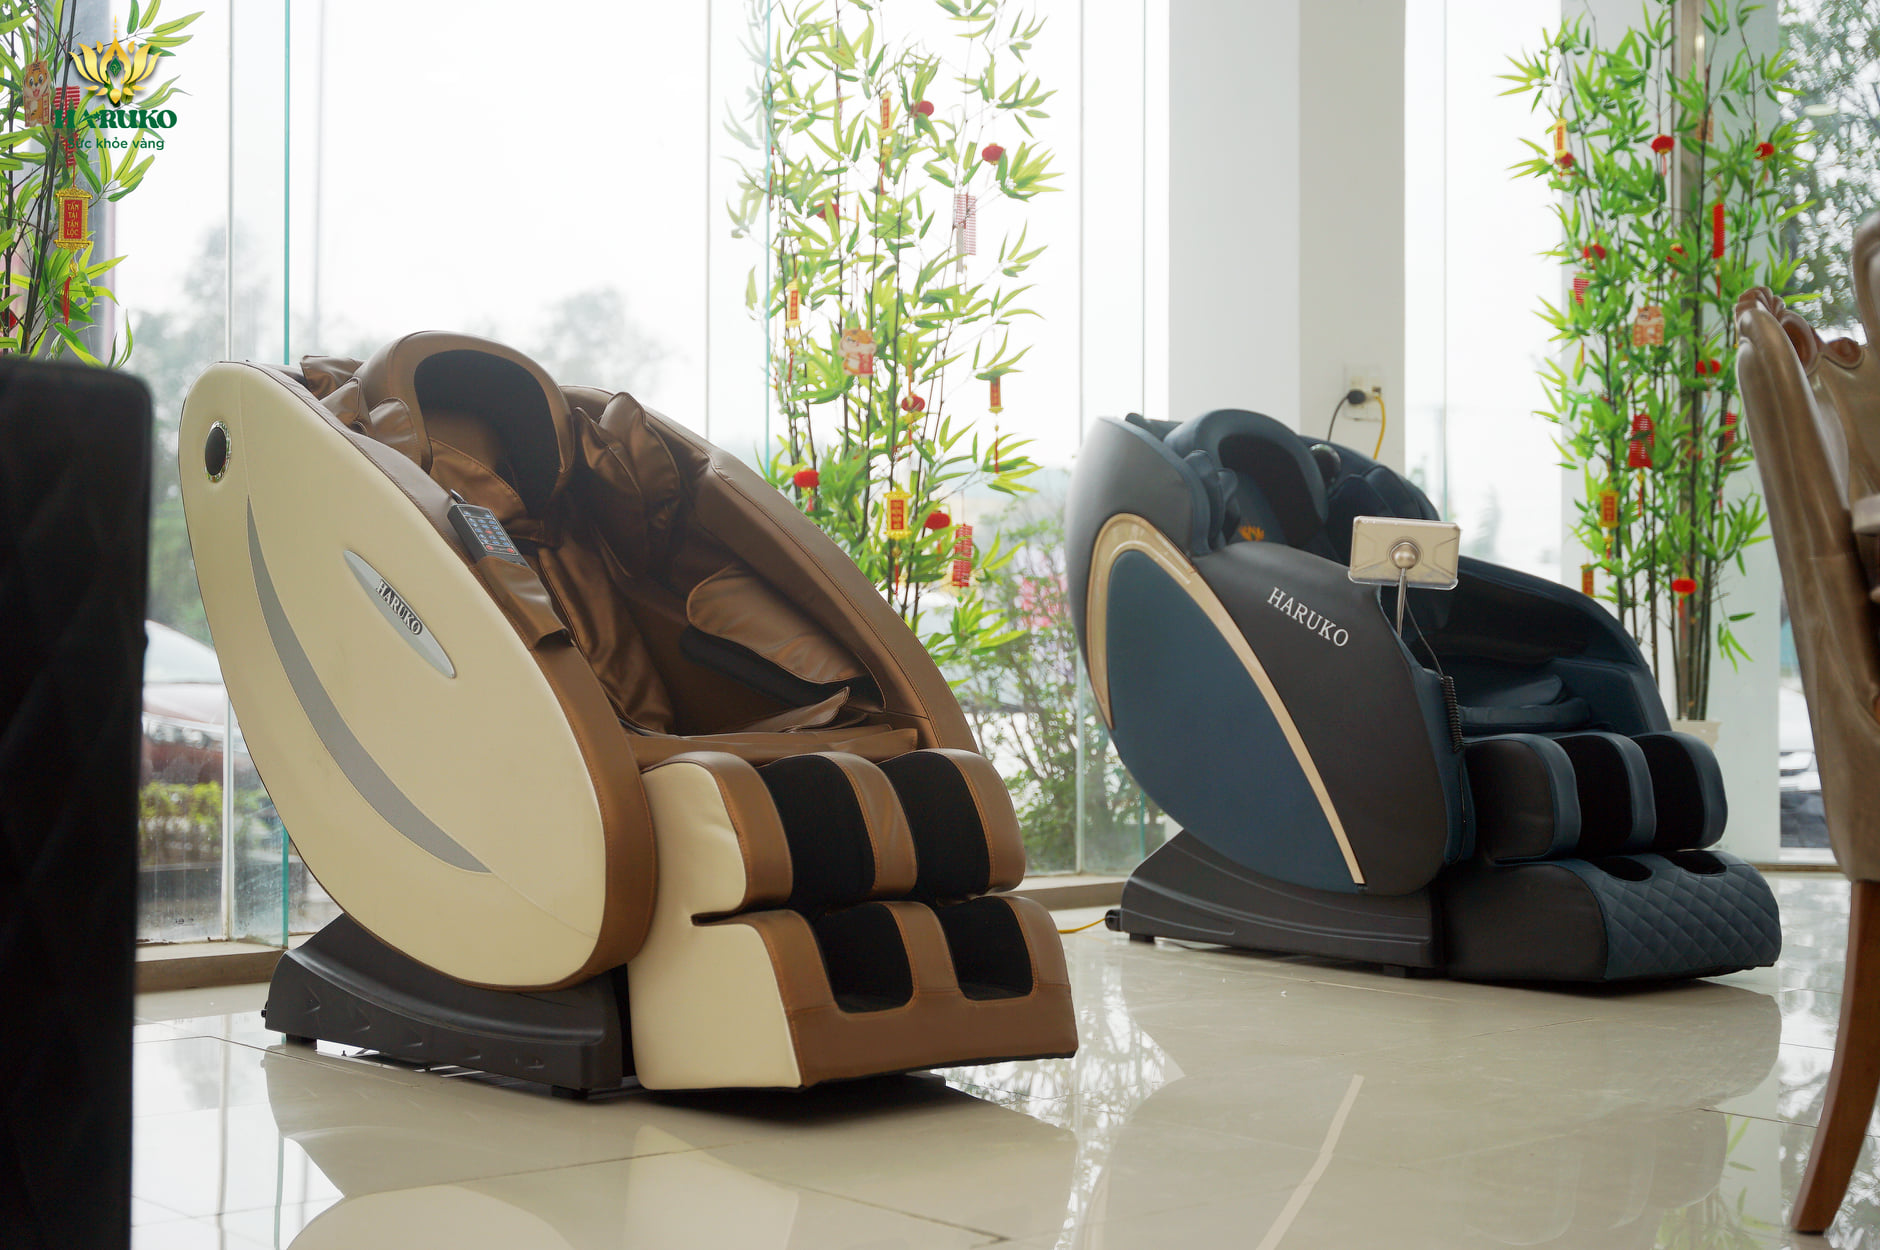 Địa điểm cung cấp ghế massage chính hãng tại Bắc Giang là chủ đề nóng đối với người tiêu dùng thời điểm hiện tại